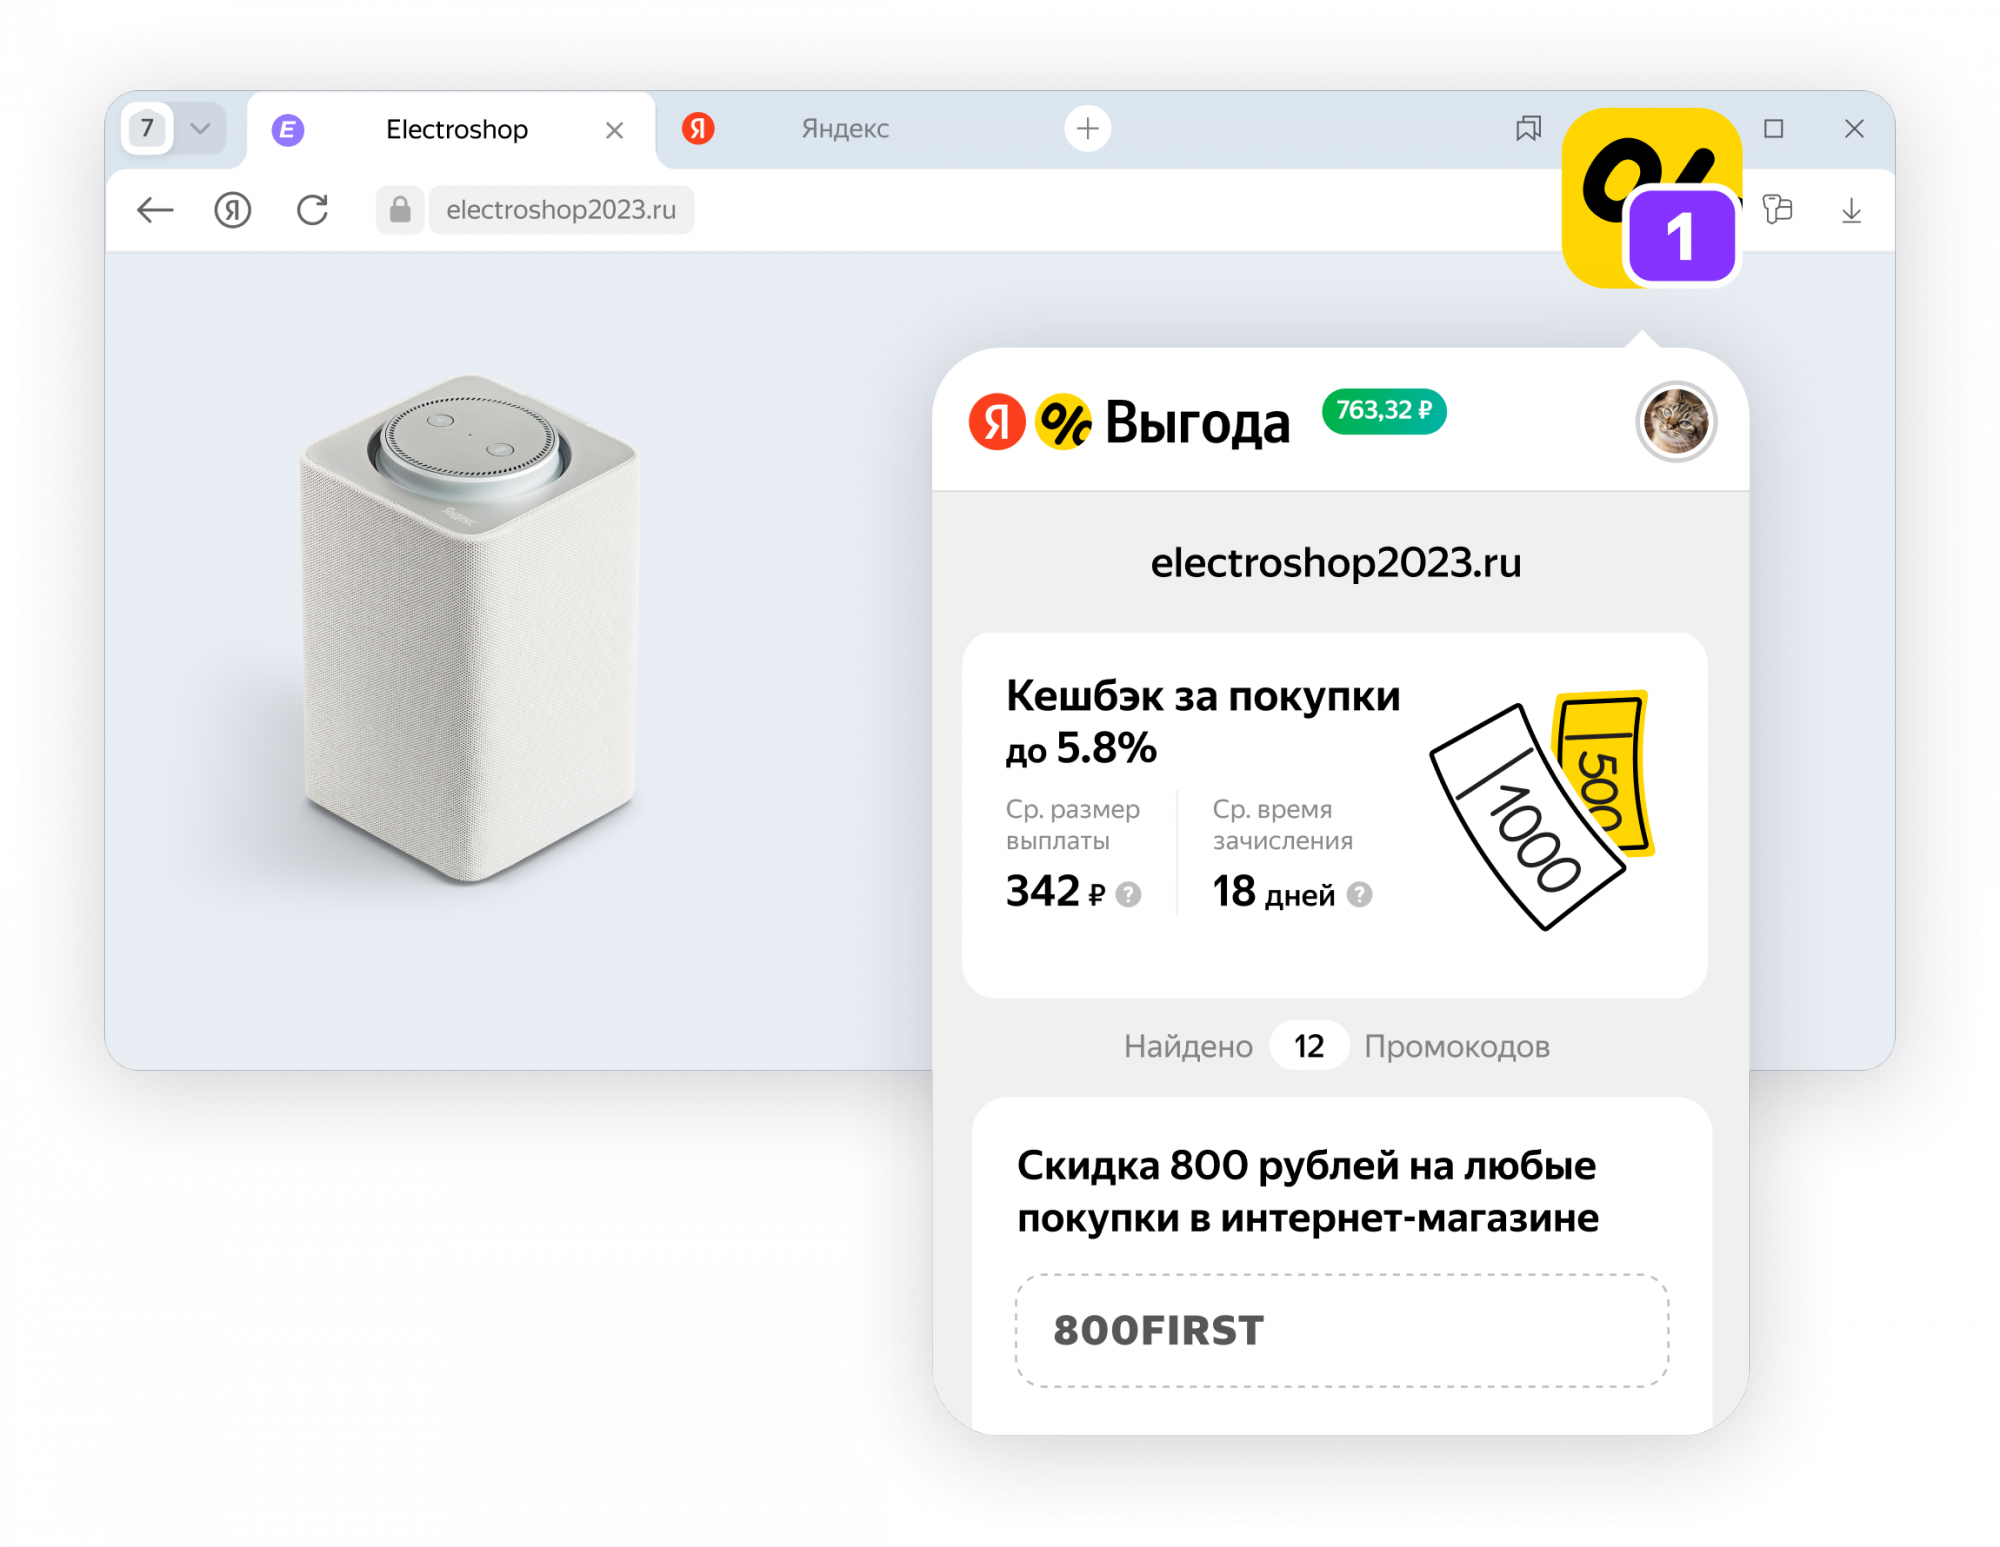 Яндекс представил расширение для браузера со скидками и кешбэком Яндекс Выгода